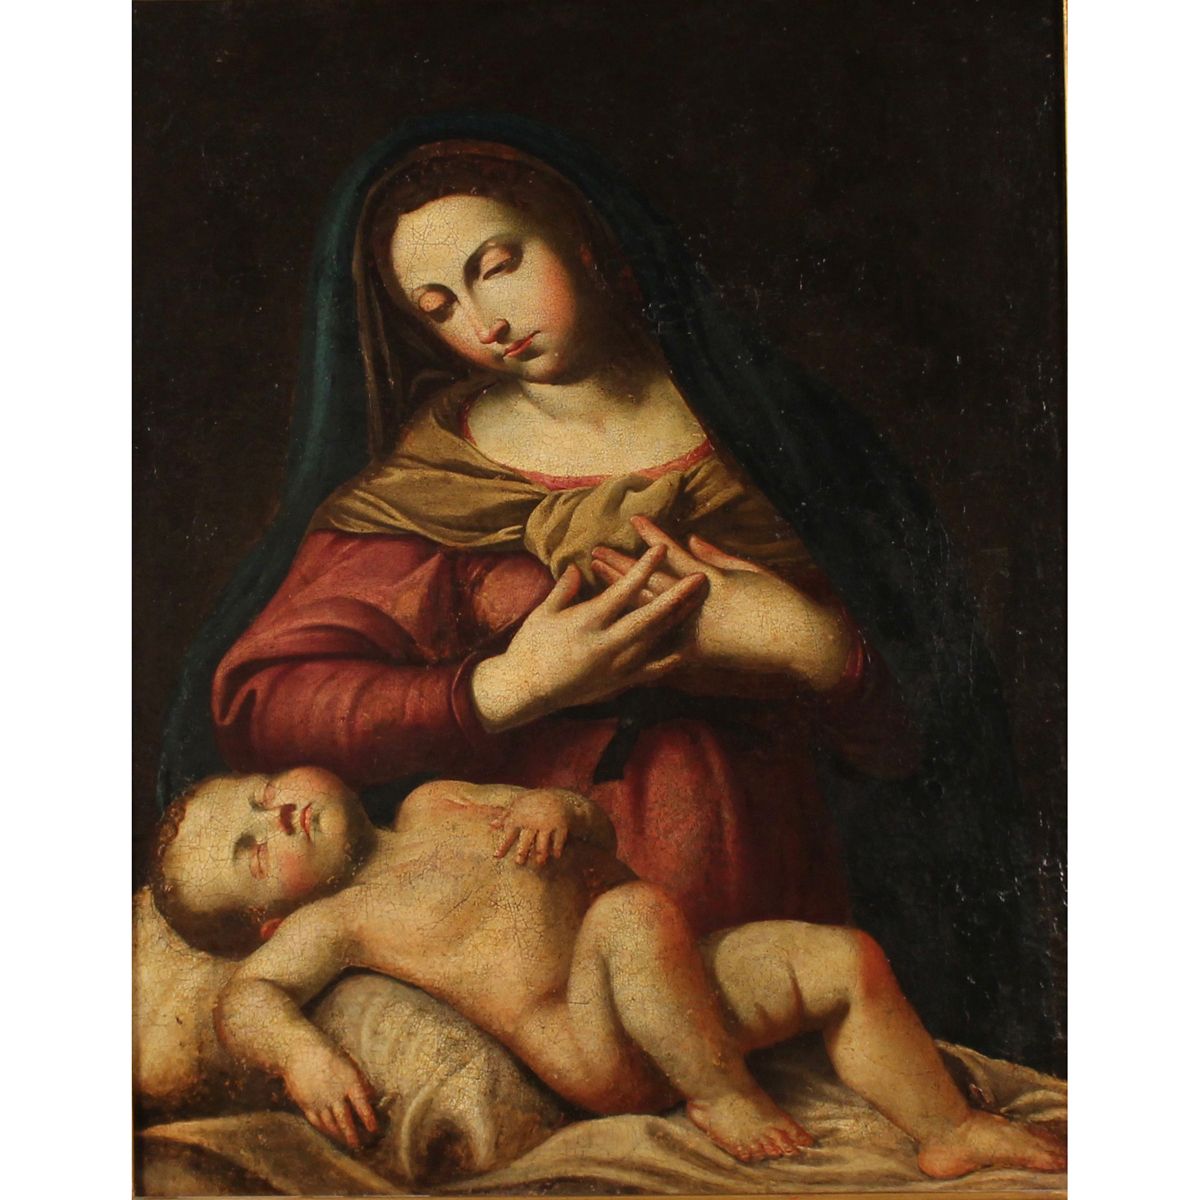 SCUOLA SICILIANA DEL SECOLO XVIII "La Madonna col bambino" - SICILIAN SCHOOL OF &hellip;